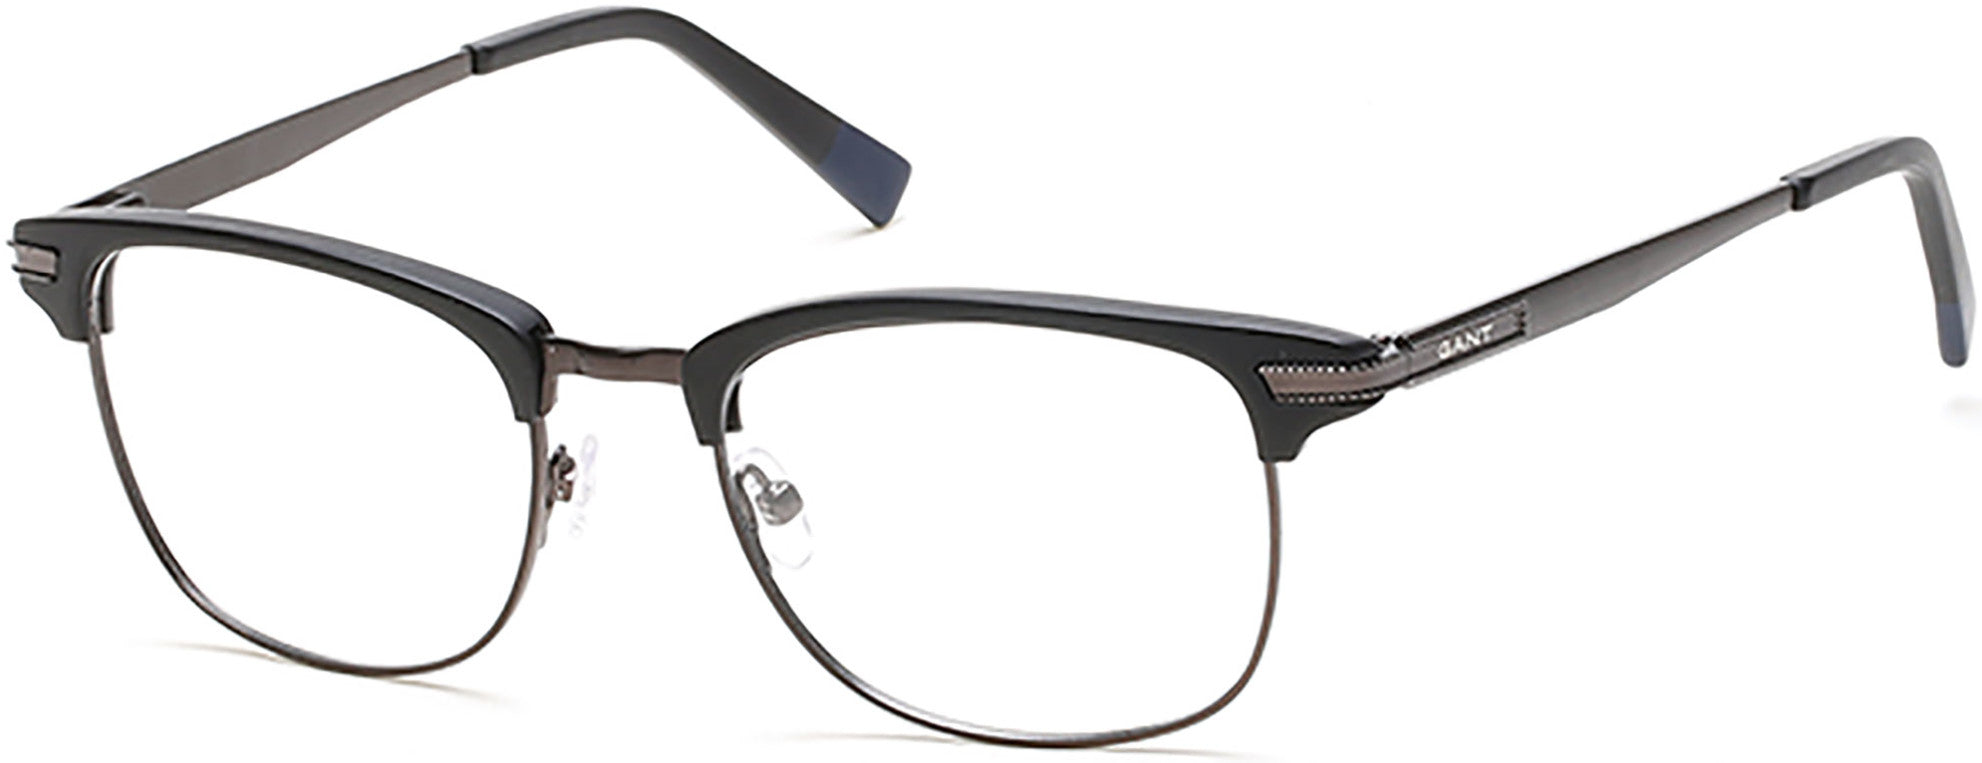 Gant GA3090 Eyeglasses 002-002 - Matte Black